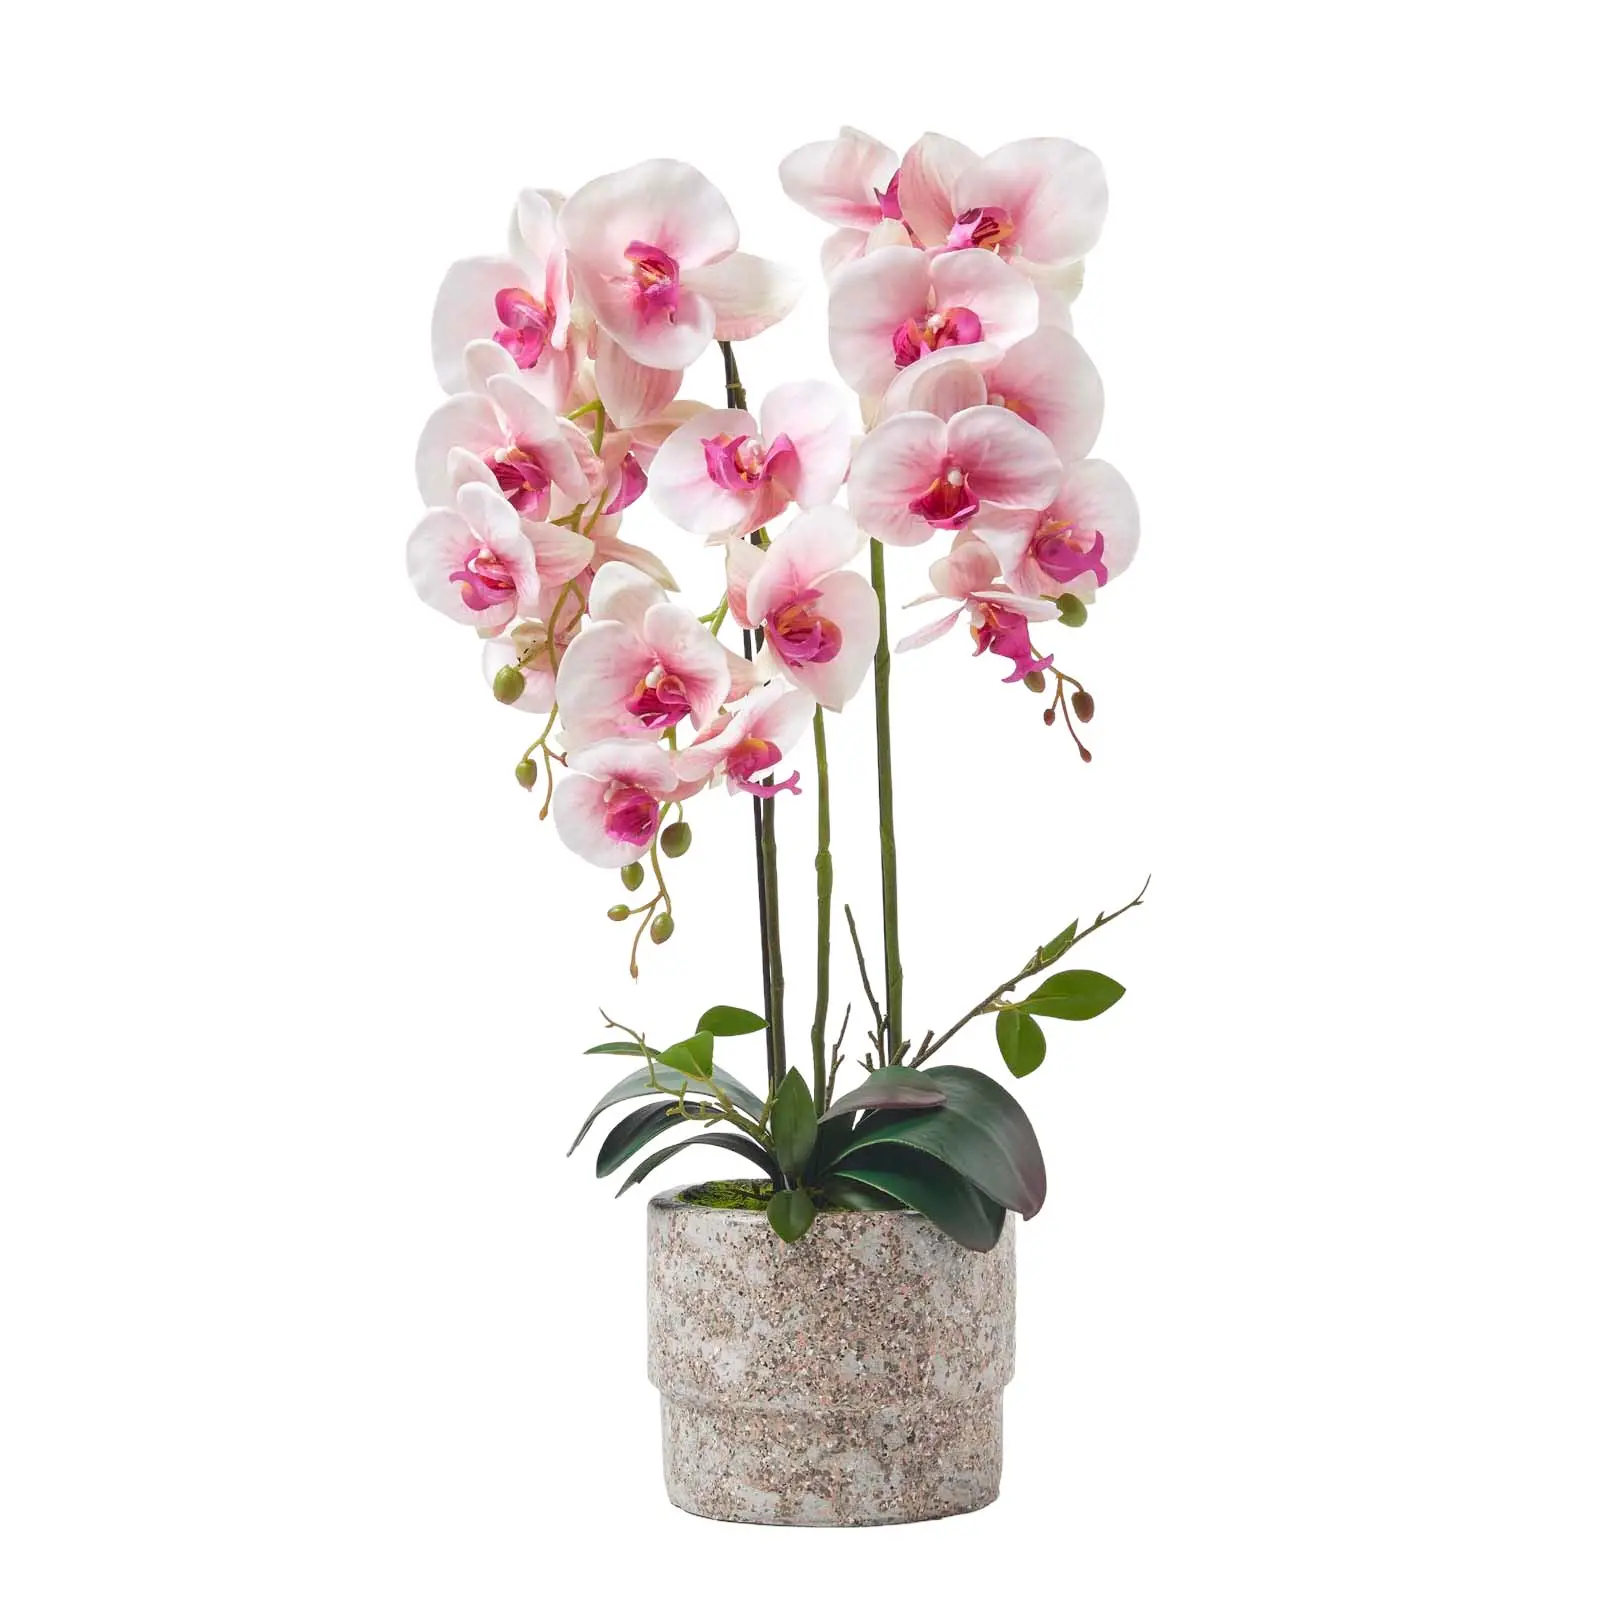 K眉nstliche Phalaenopsis-Orchidee